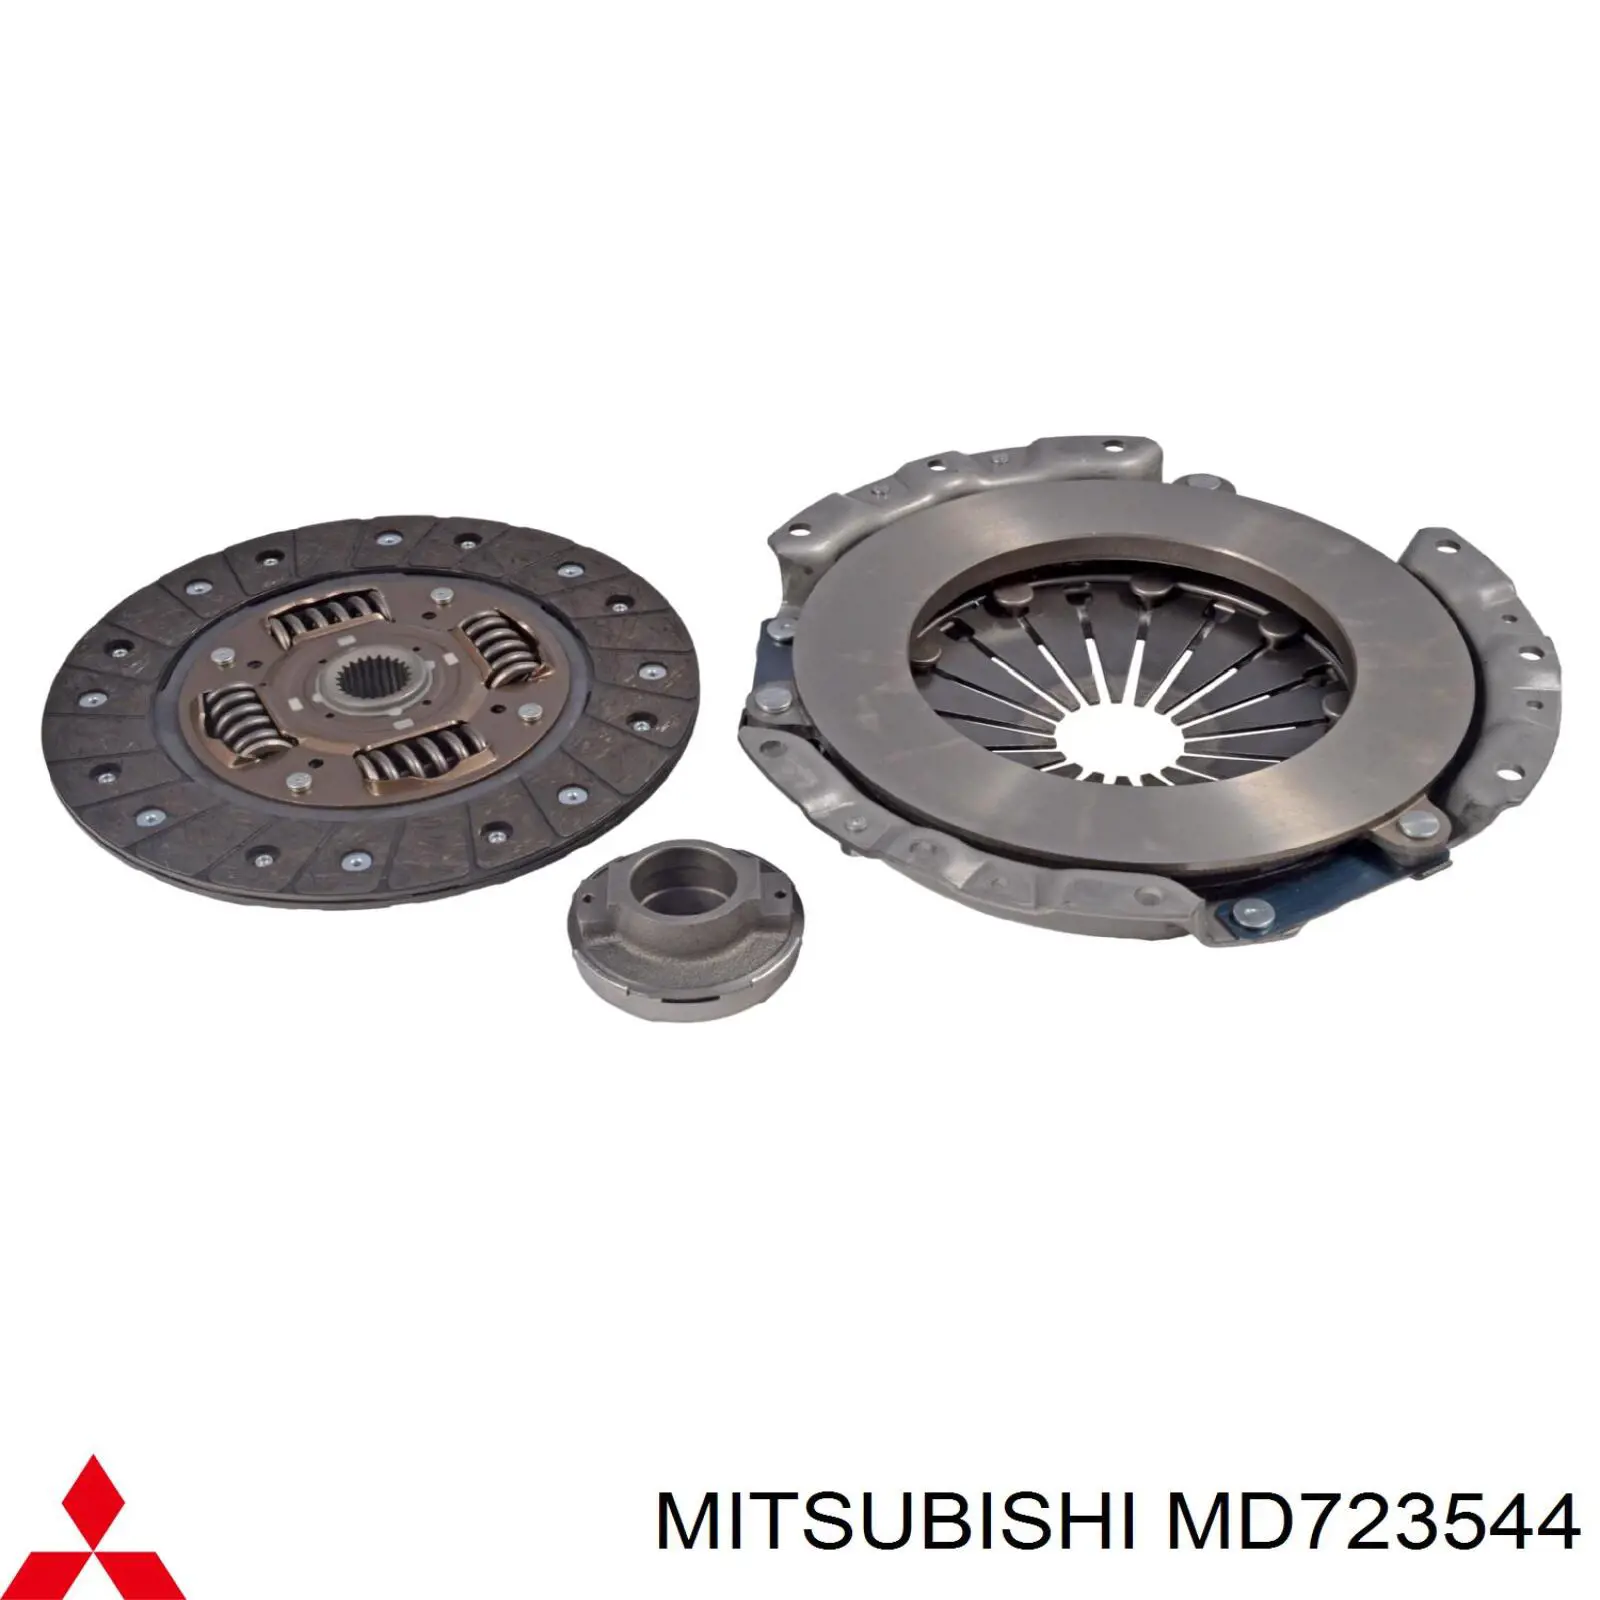 MD723544 Mitsubishi plato de presión del embrague